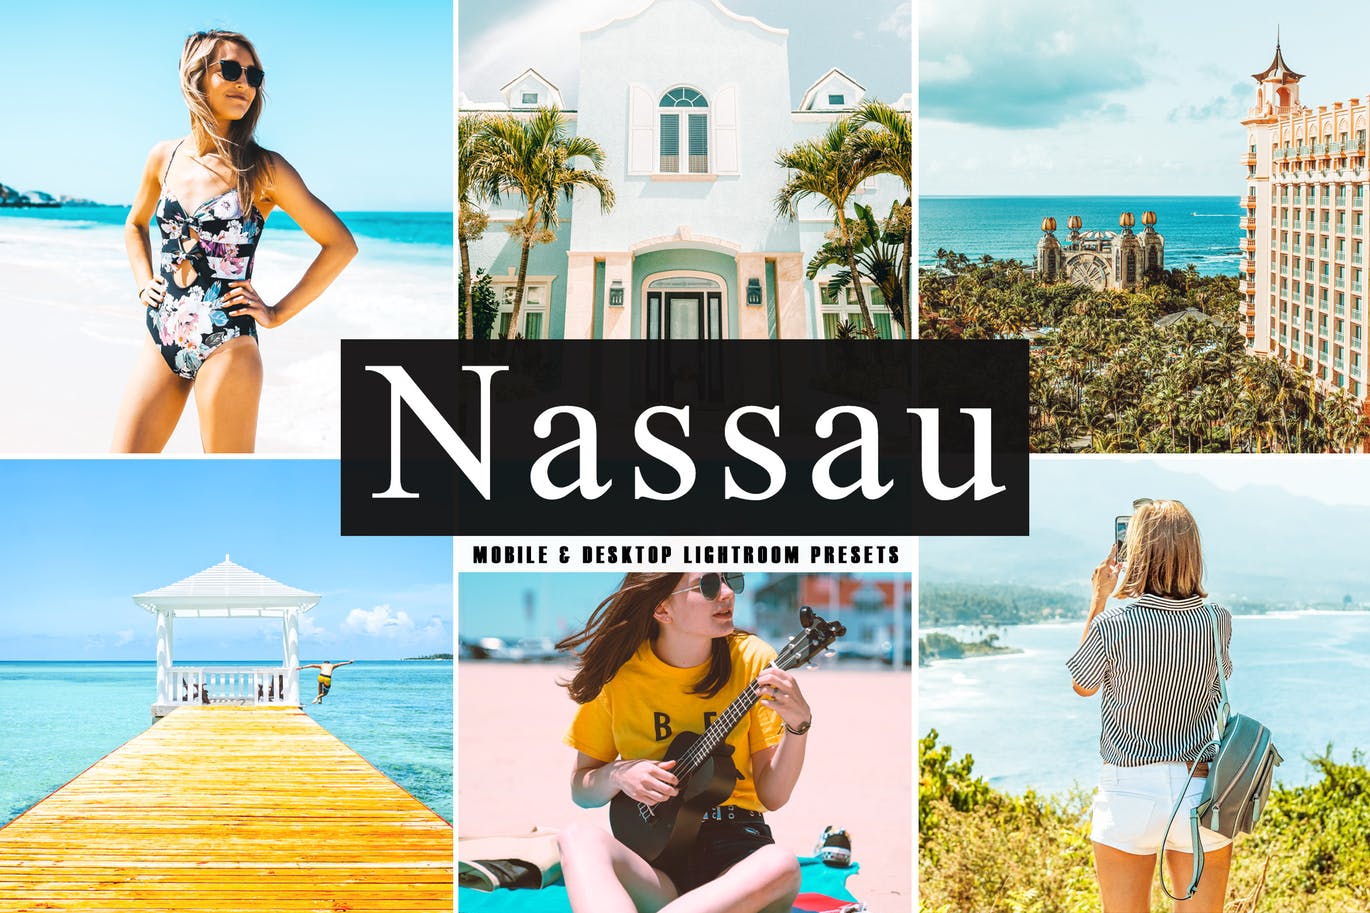 Nassau Mobile & Desktop Lightroom Presets